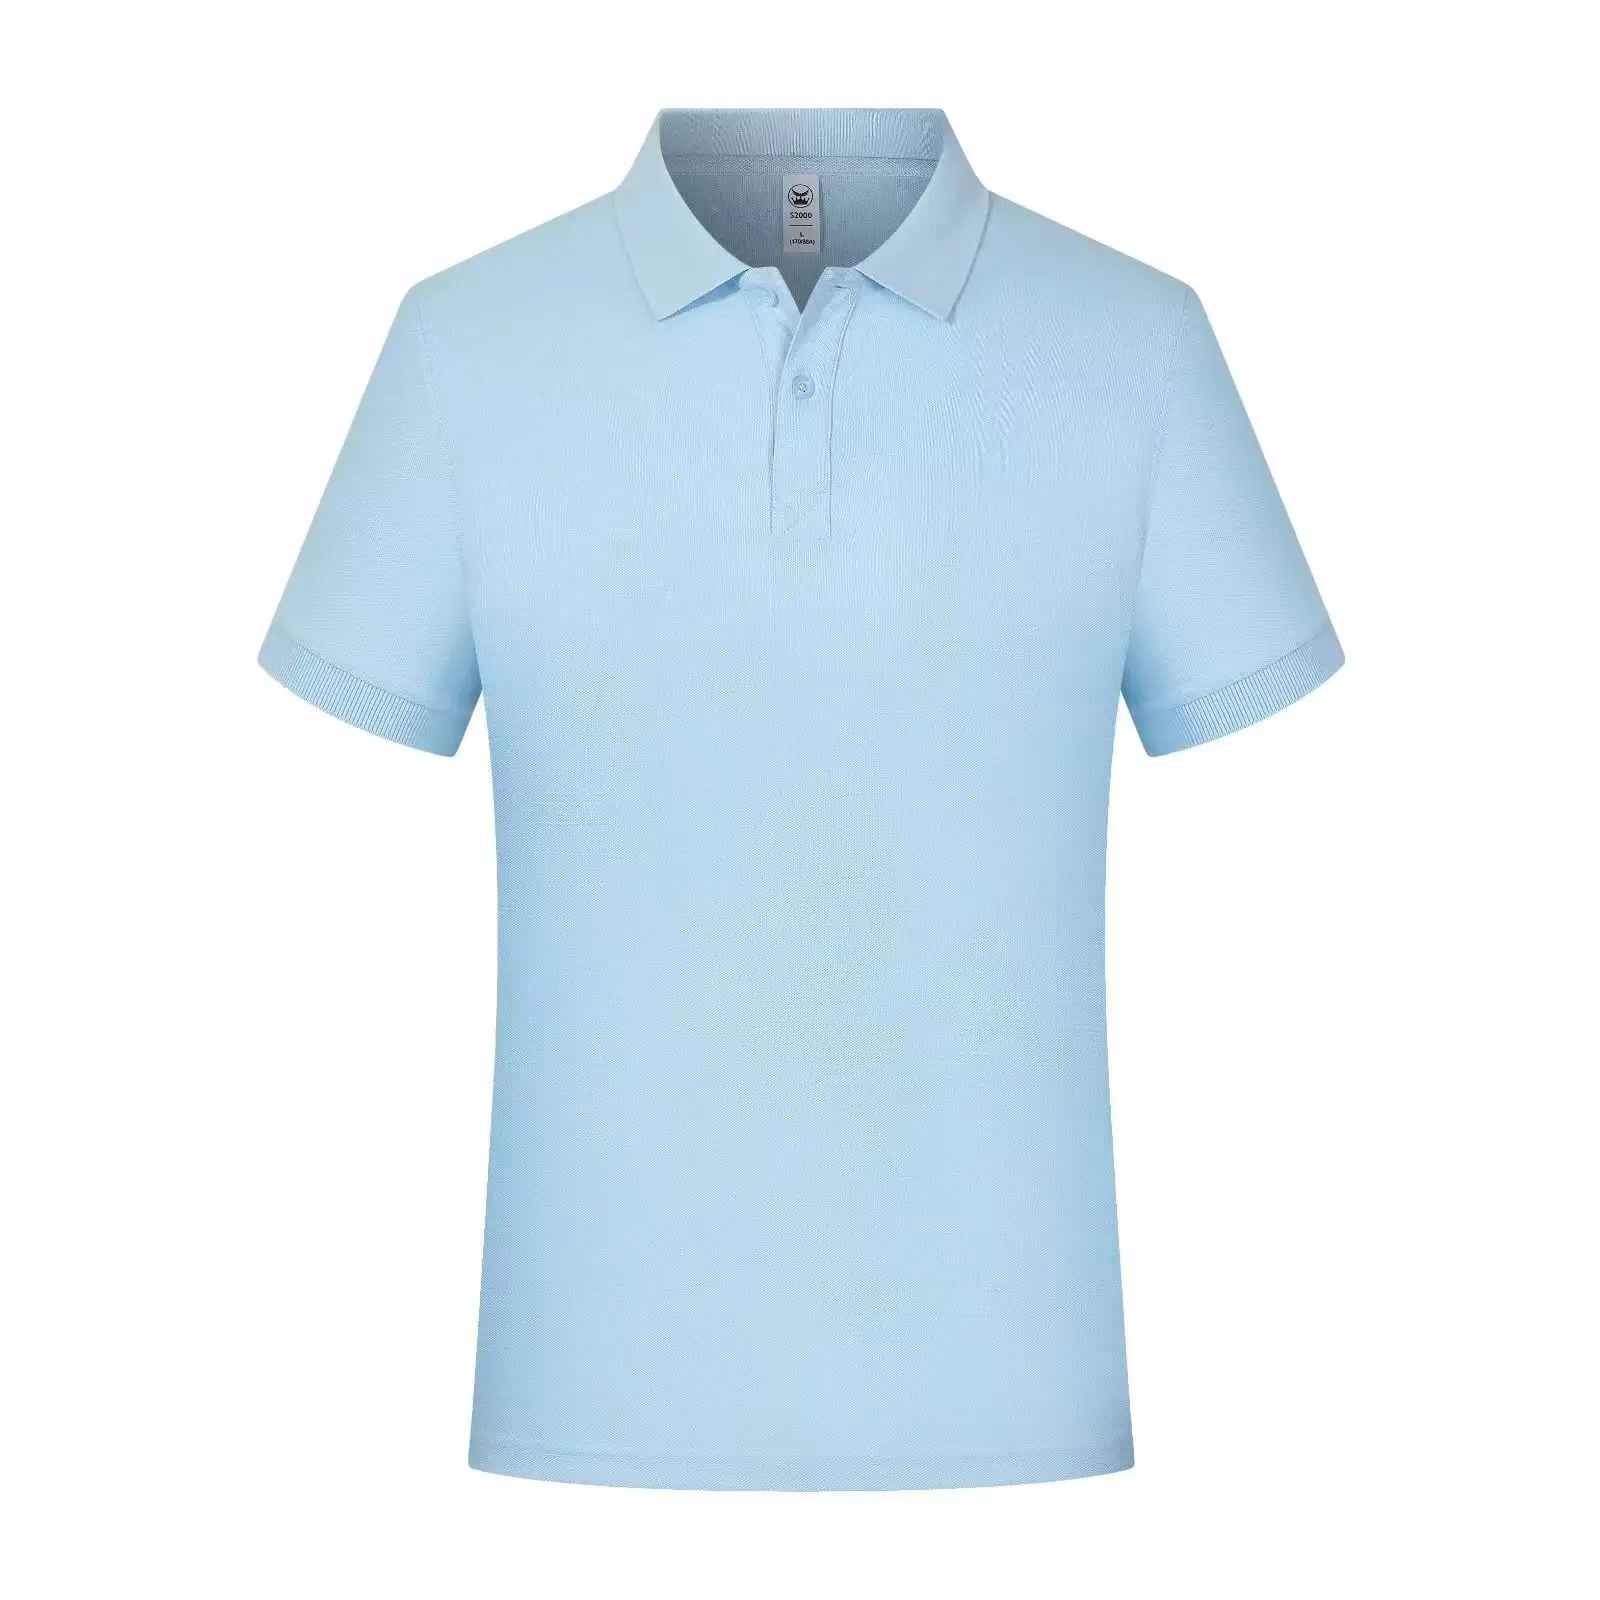 OEM all'ingrosso Unisex polo t-shirt uomo cotone personalizzato polo manica corta polo di alta qualità